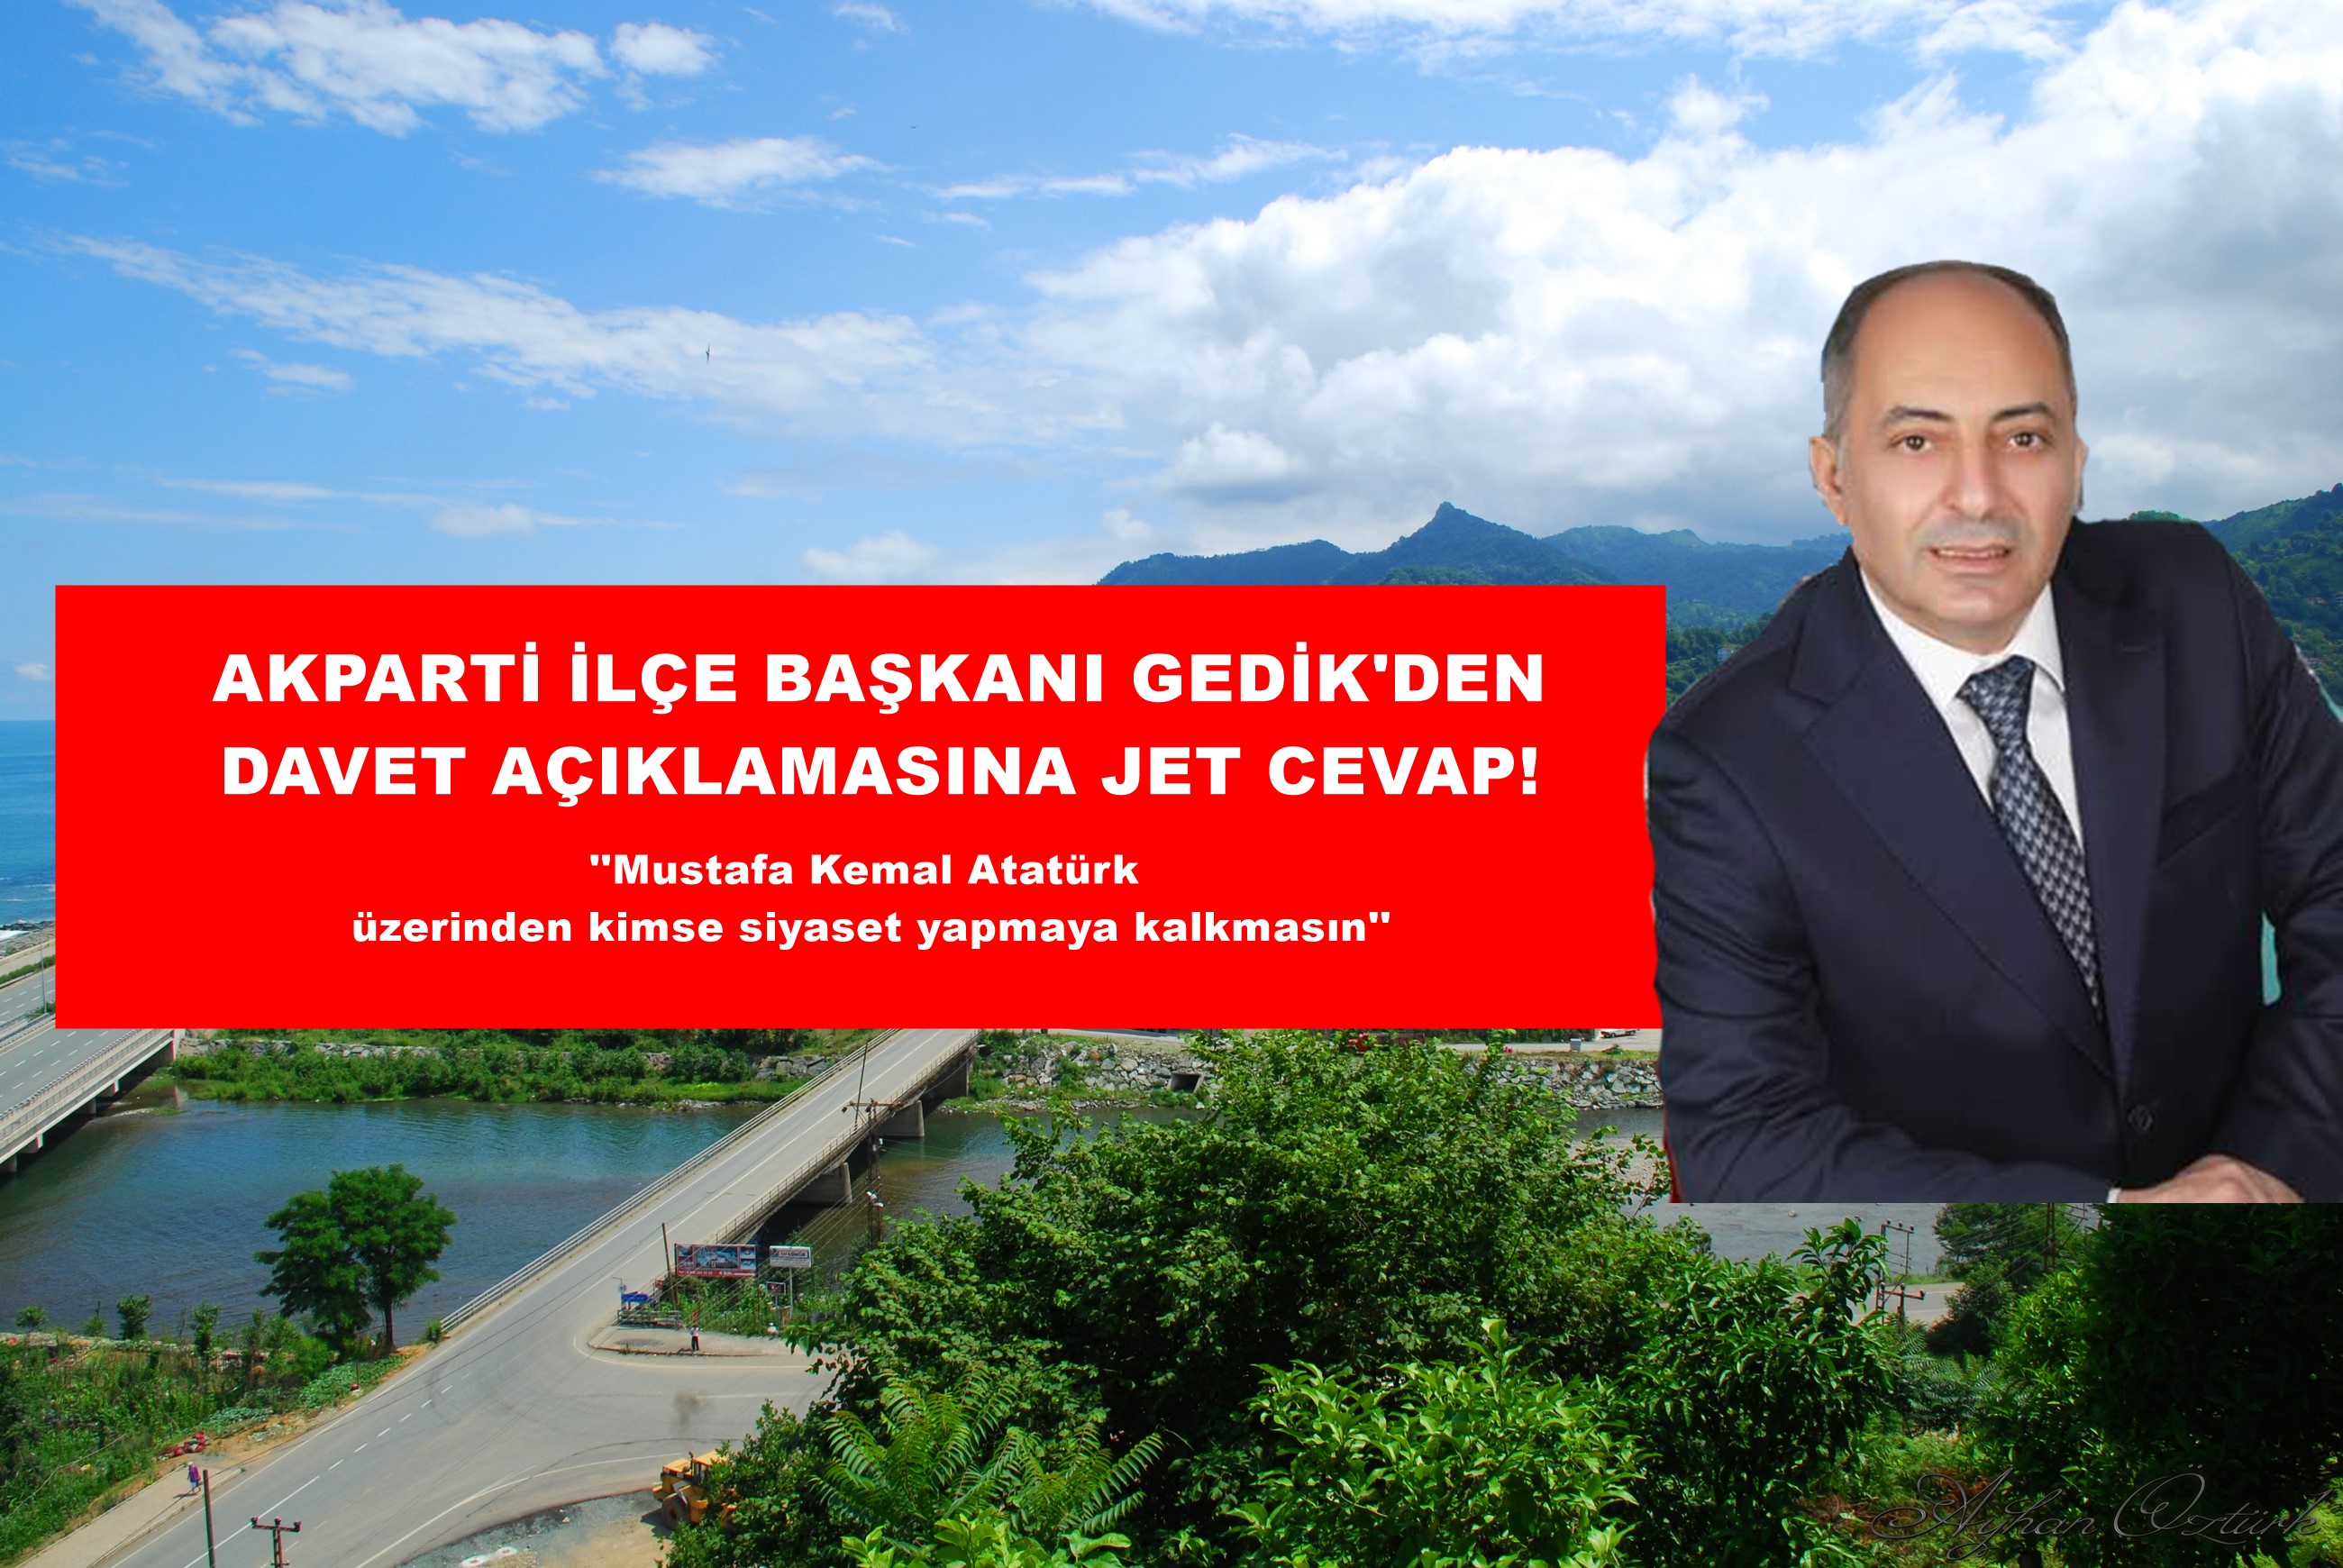 Akparti İlçe başkanı Remzi GEDİK'den Chp'ye Jet  Yanıt